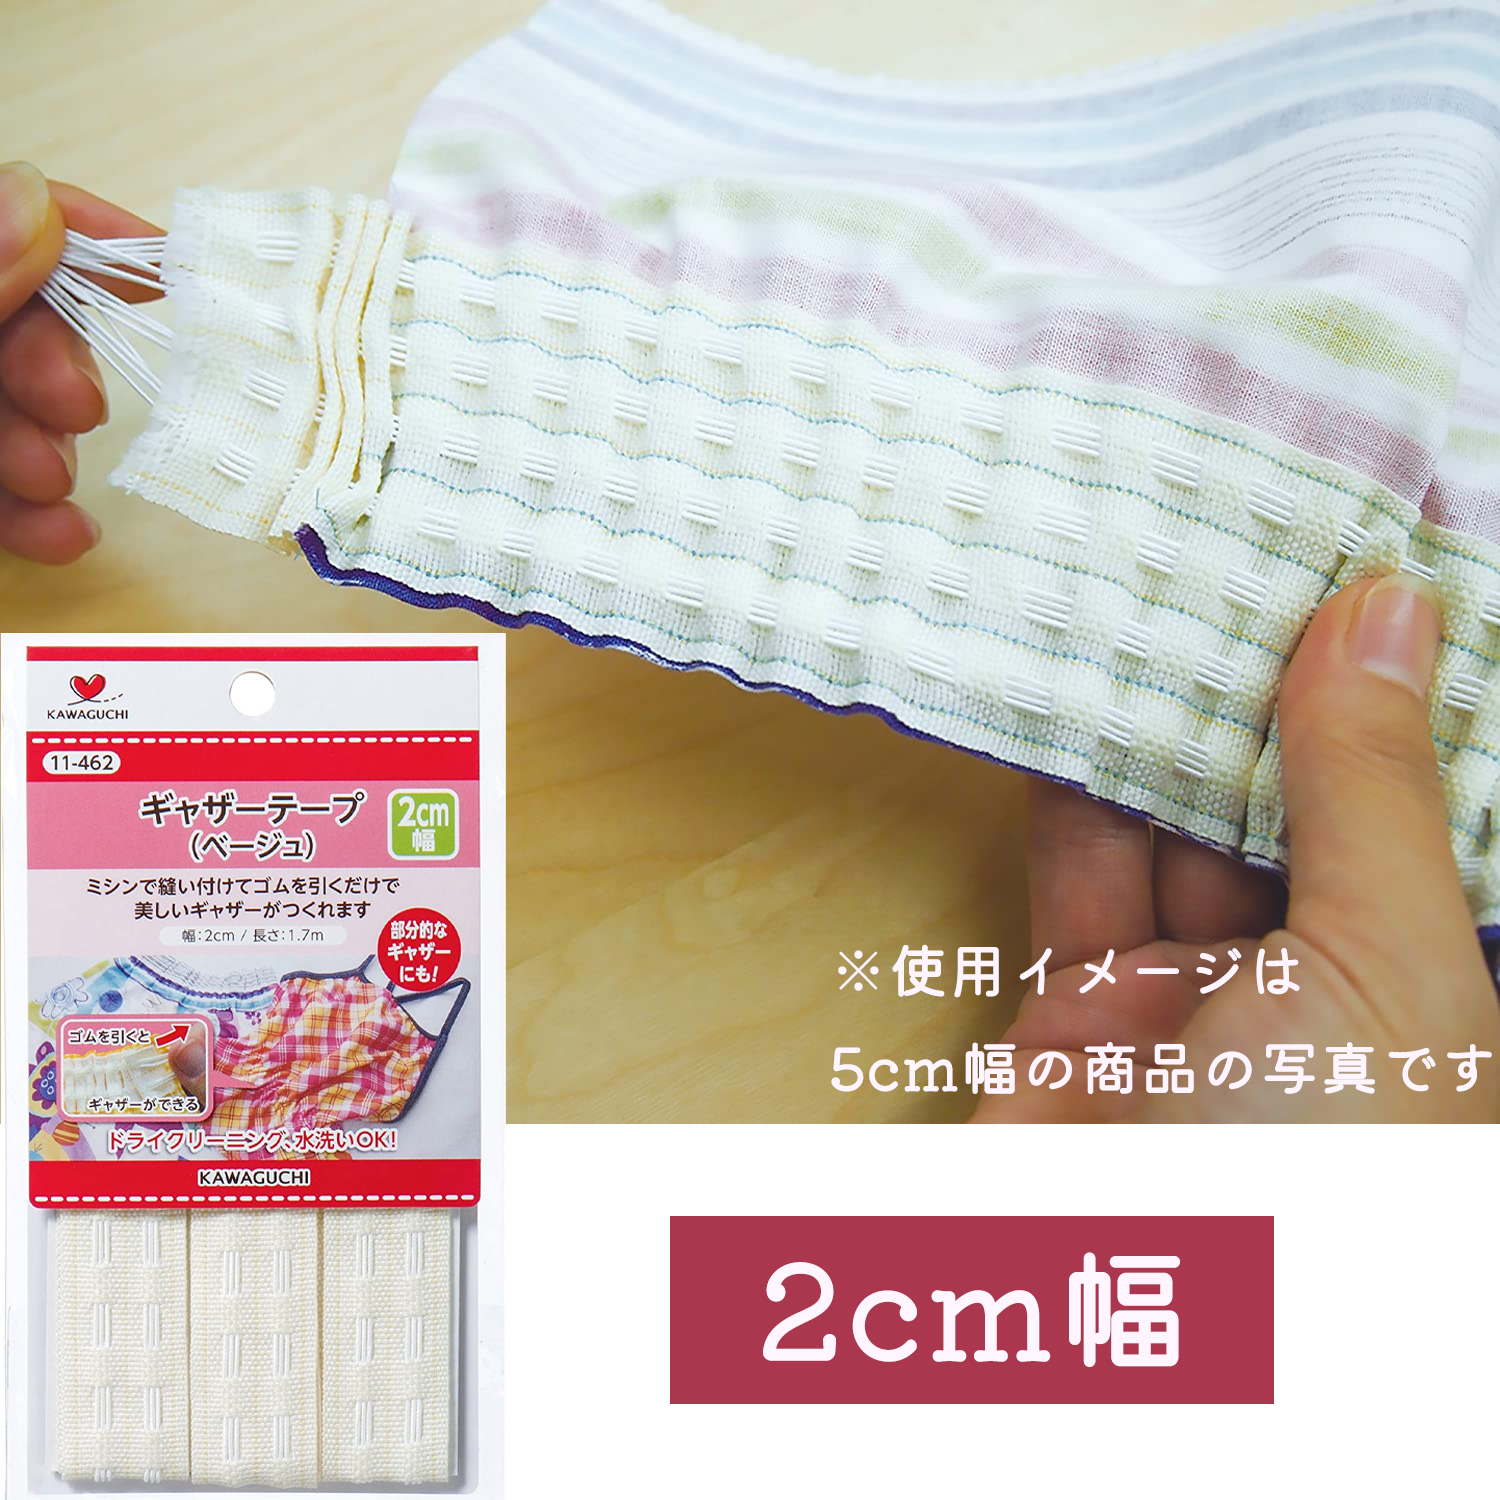 TK11462　KAWAGUCHI ギャザーテープ ベージュ 2cm巾×1.7m巻 (枚)